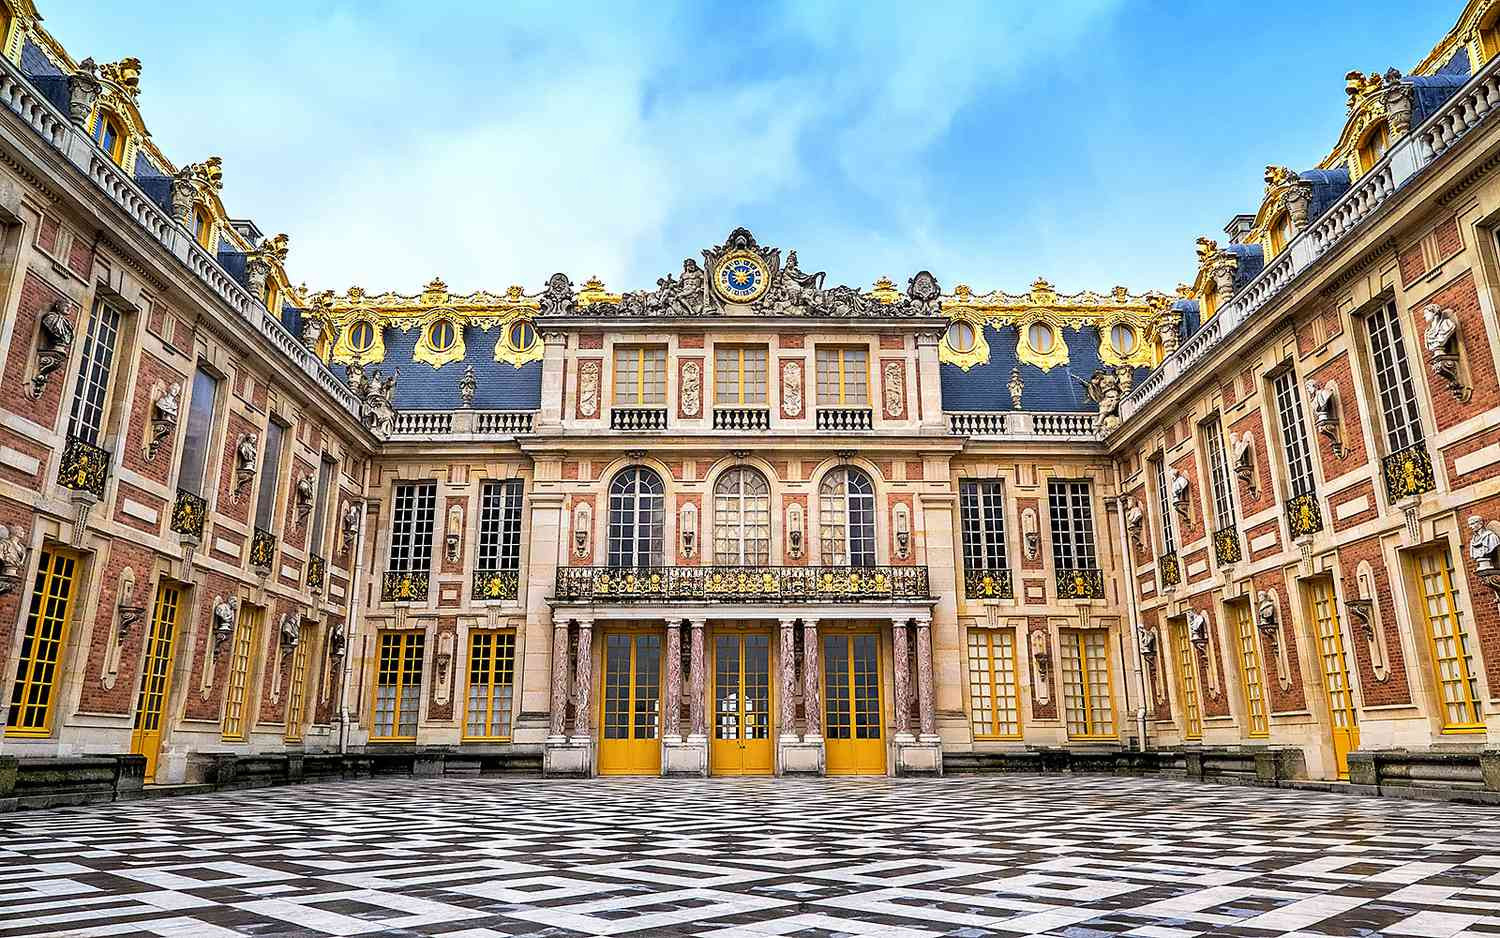 Palace of Versailles (Versailles)